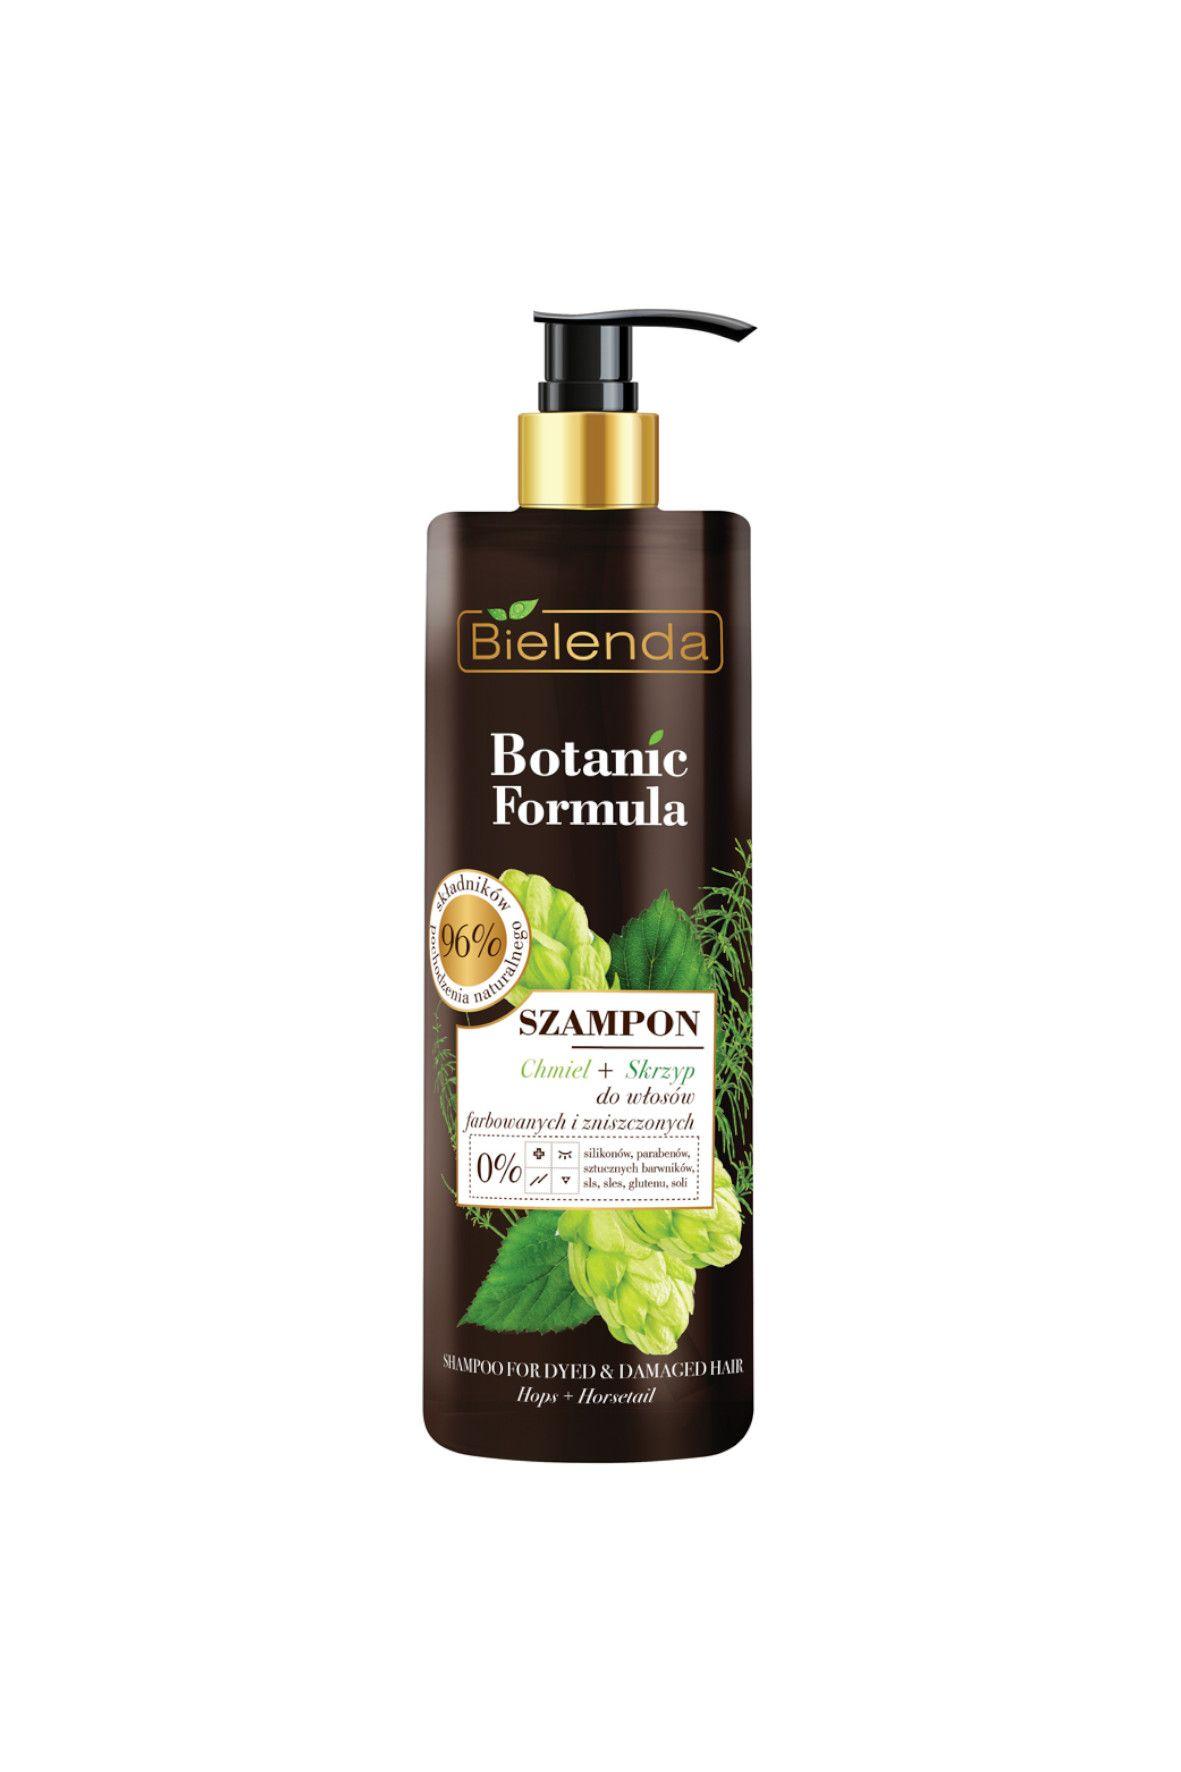 bielenda botanic formula szampon do włosów farbowanych skrzyp polny chmiel